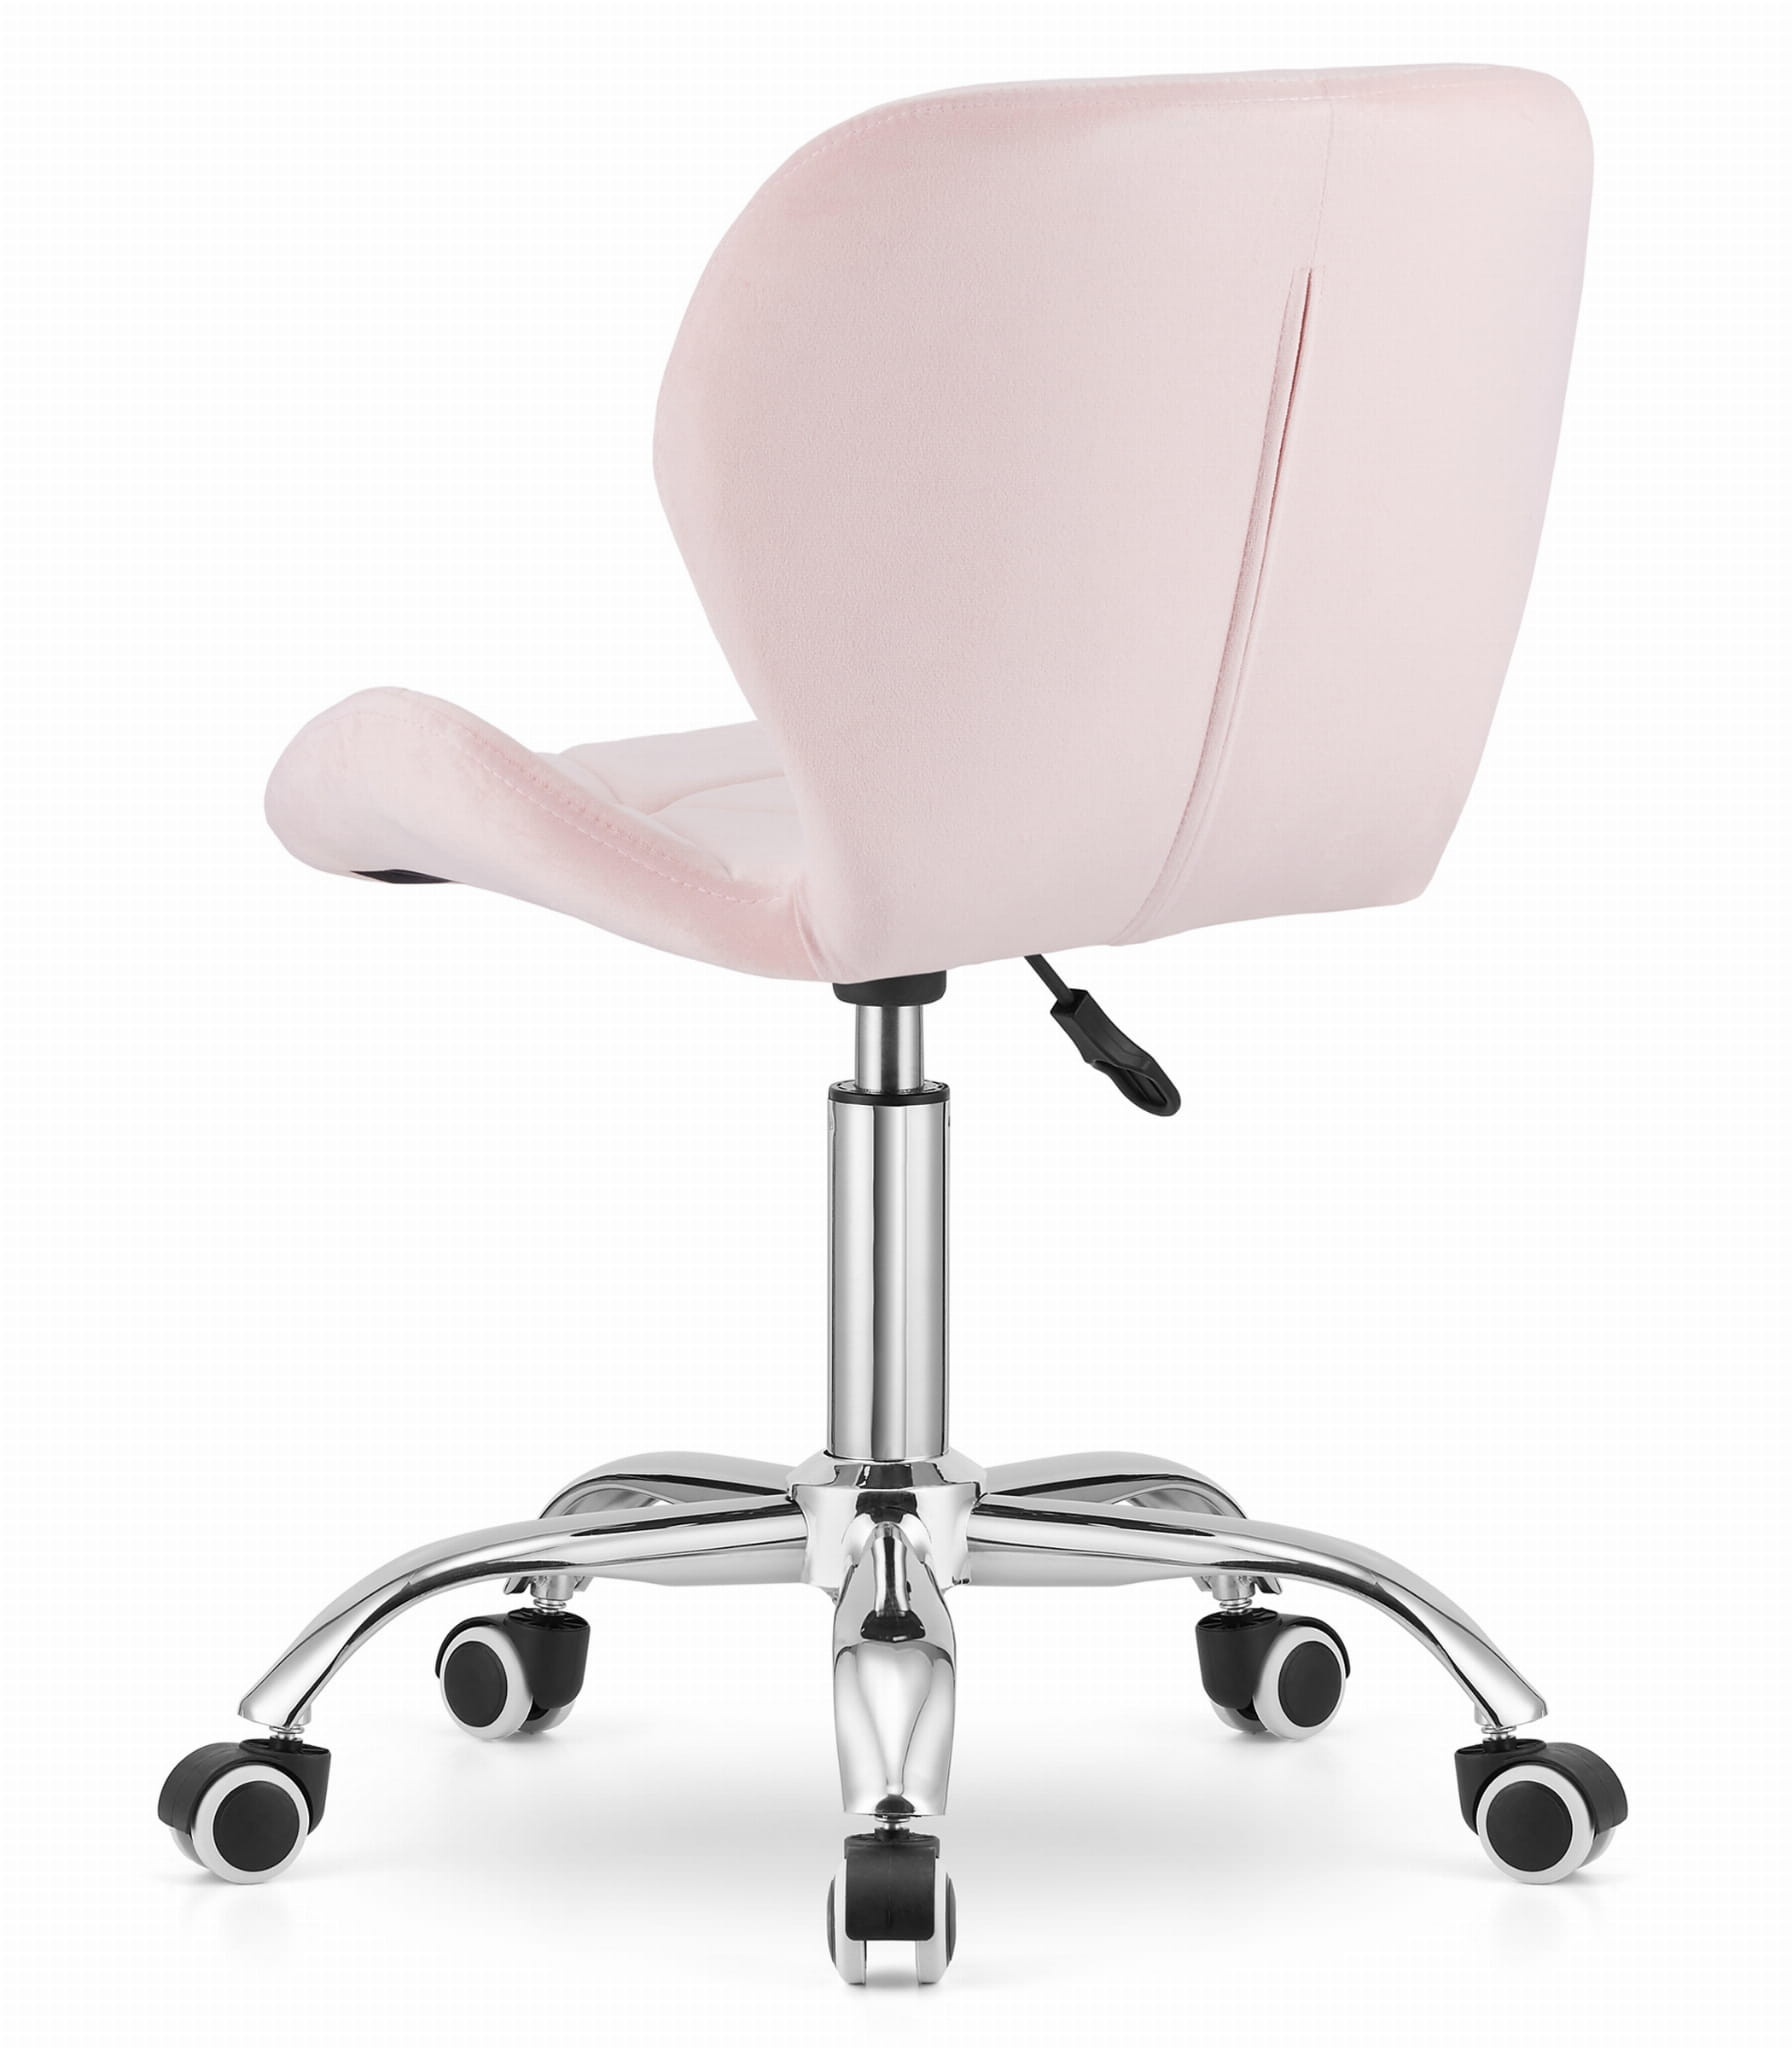 Kancelářská židle AVOLA sametová růžová